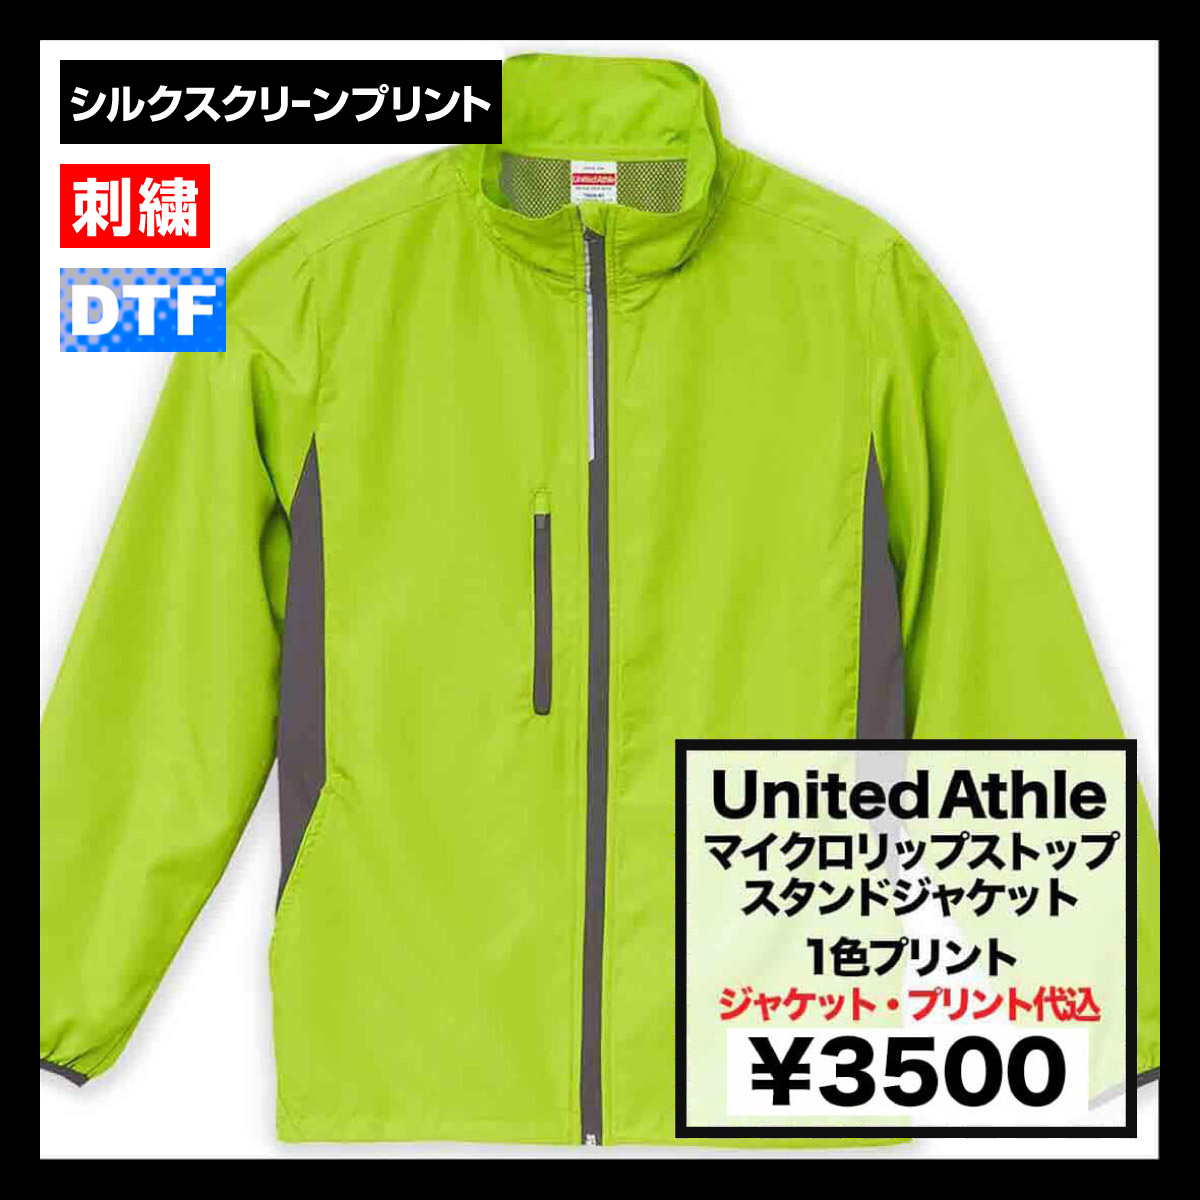 United Athle ユナイテッドアスレ マイクロリップストップスタンドジャケット (裏地付) (品番7068-01)